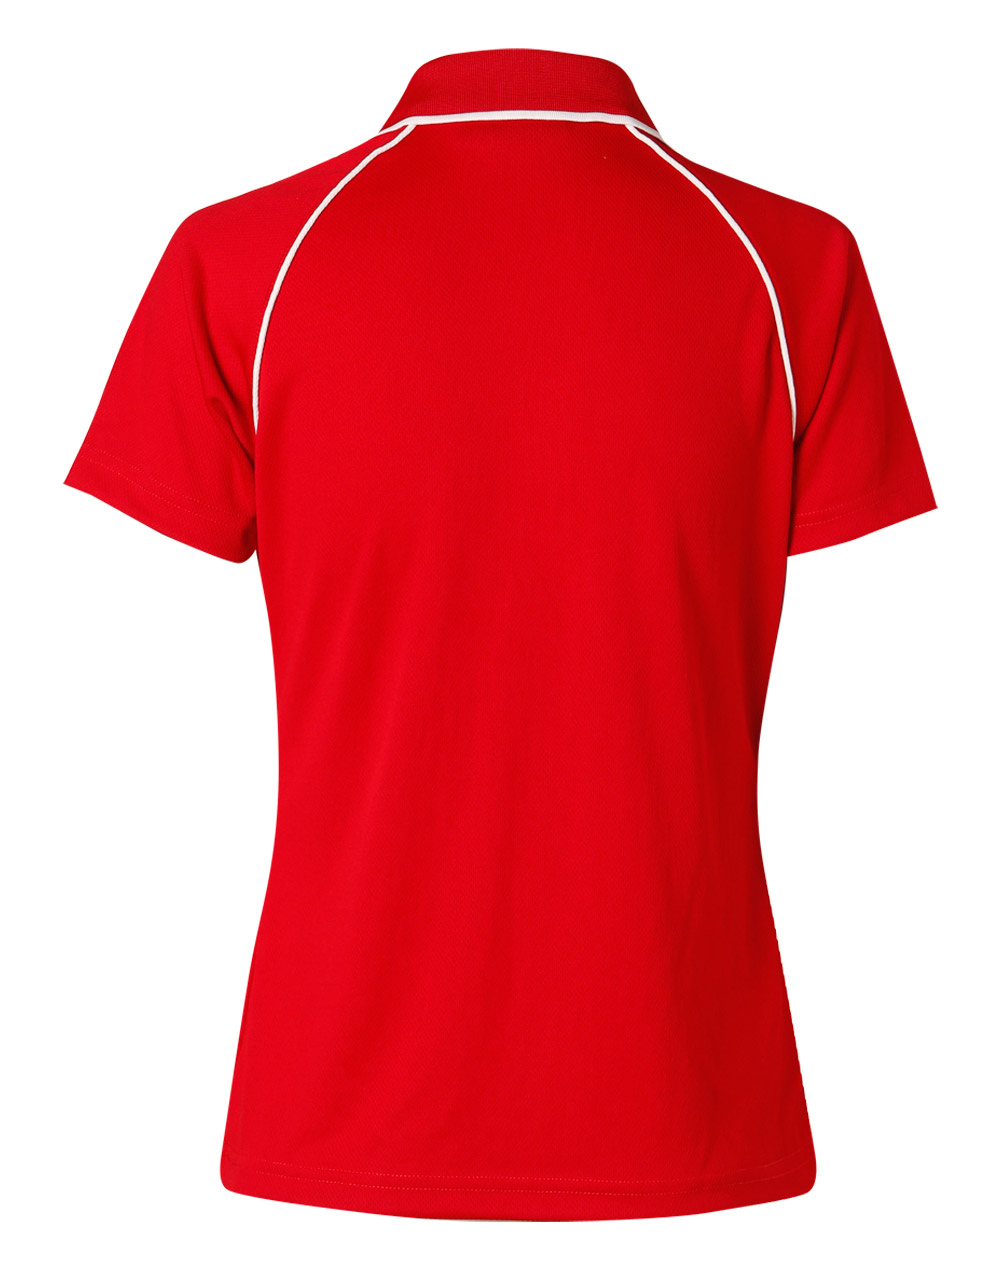 Custom Men's (Red, White) Champion Raglan Polo Shirts Online Perth Australia